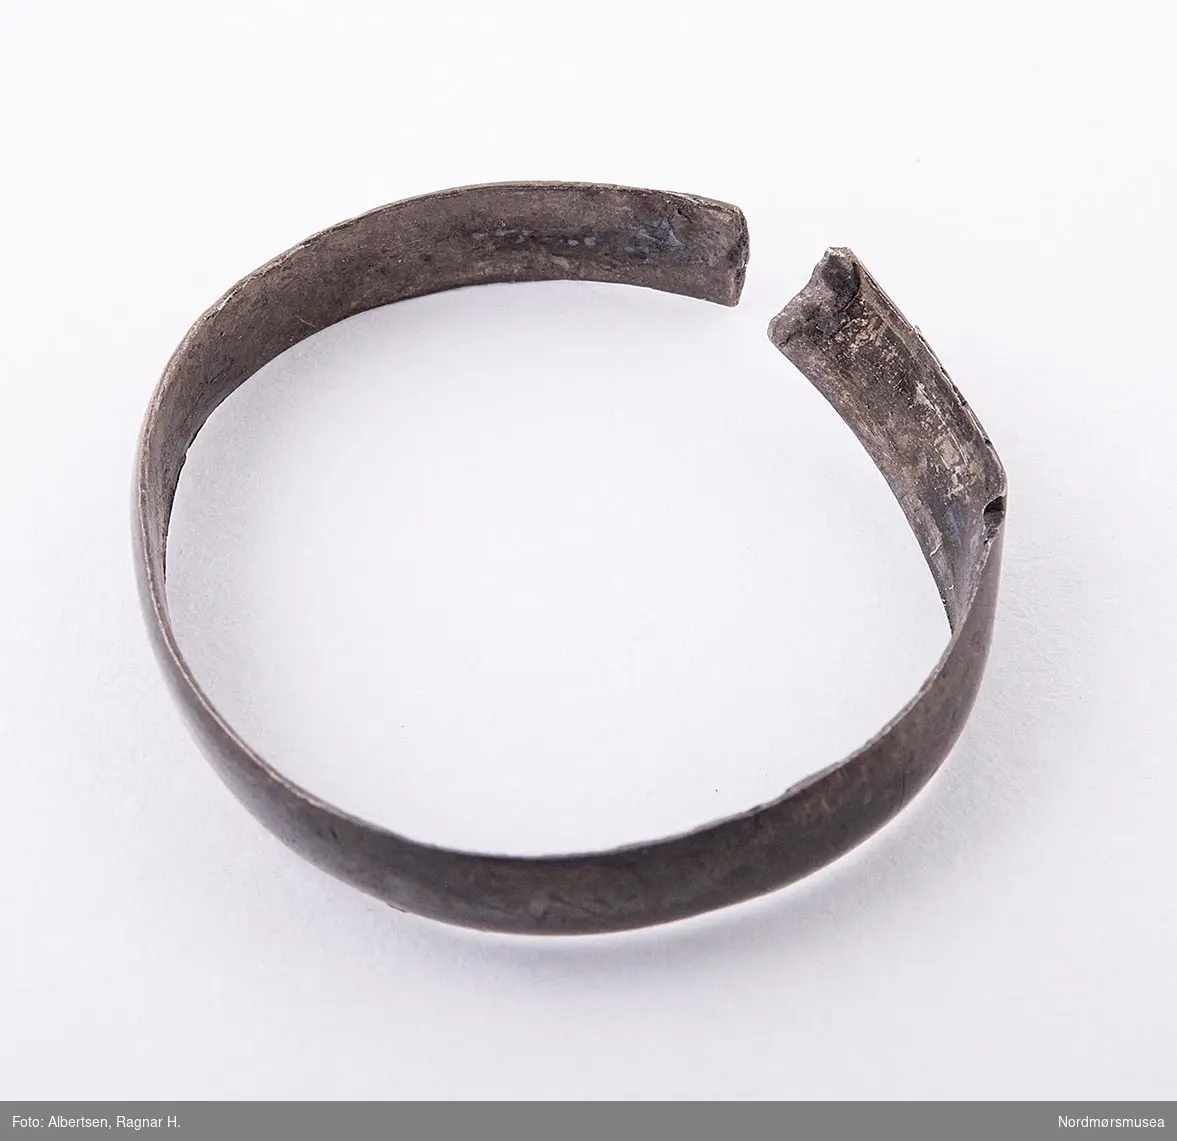 En ring, muligens i sølv, knukket. Ringen ble funnet i en plogdybde på en åker i Sunndal i 1918.